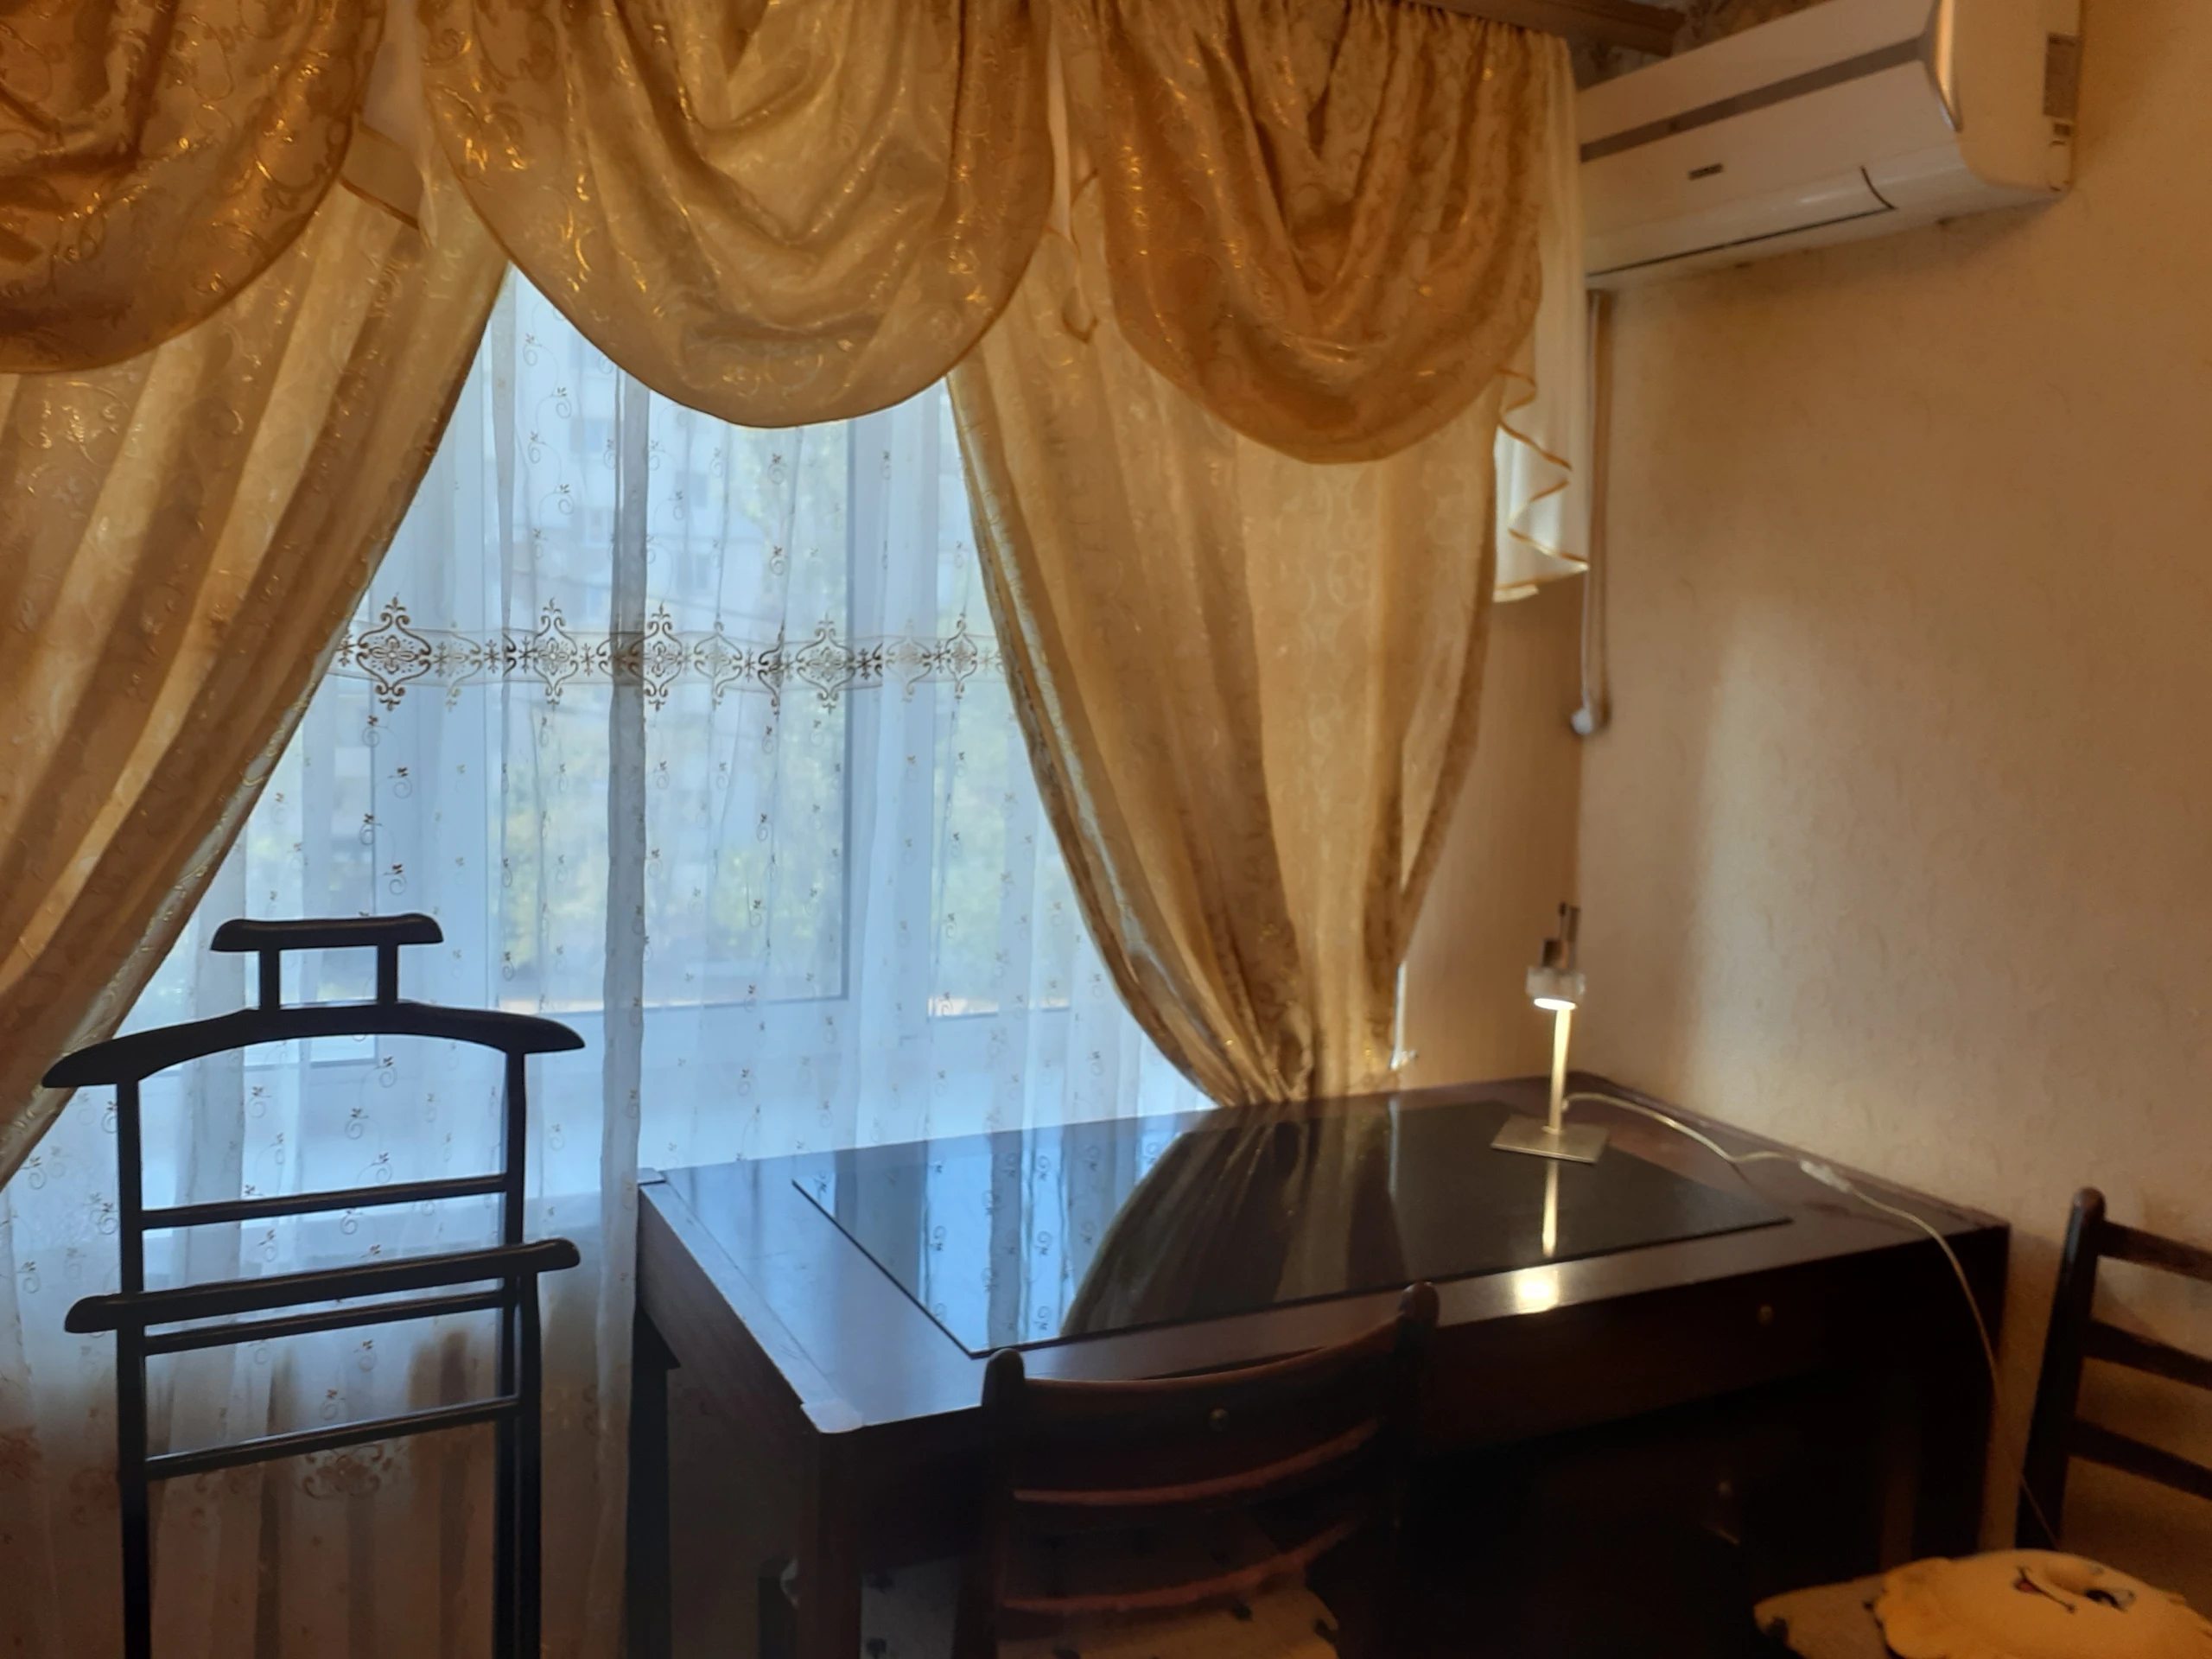 4-кімнатна квартира в центрі Київа біля метро Печерська, ТРЦ Гулівер